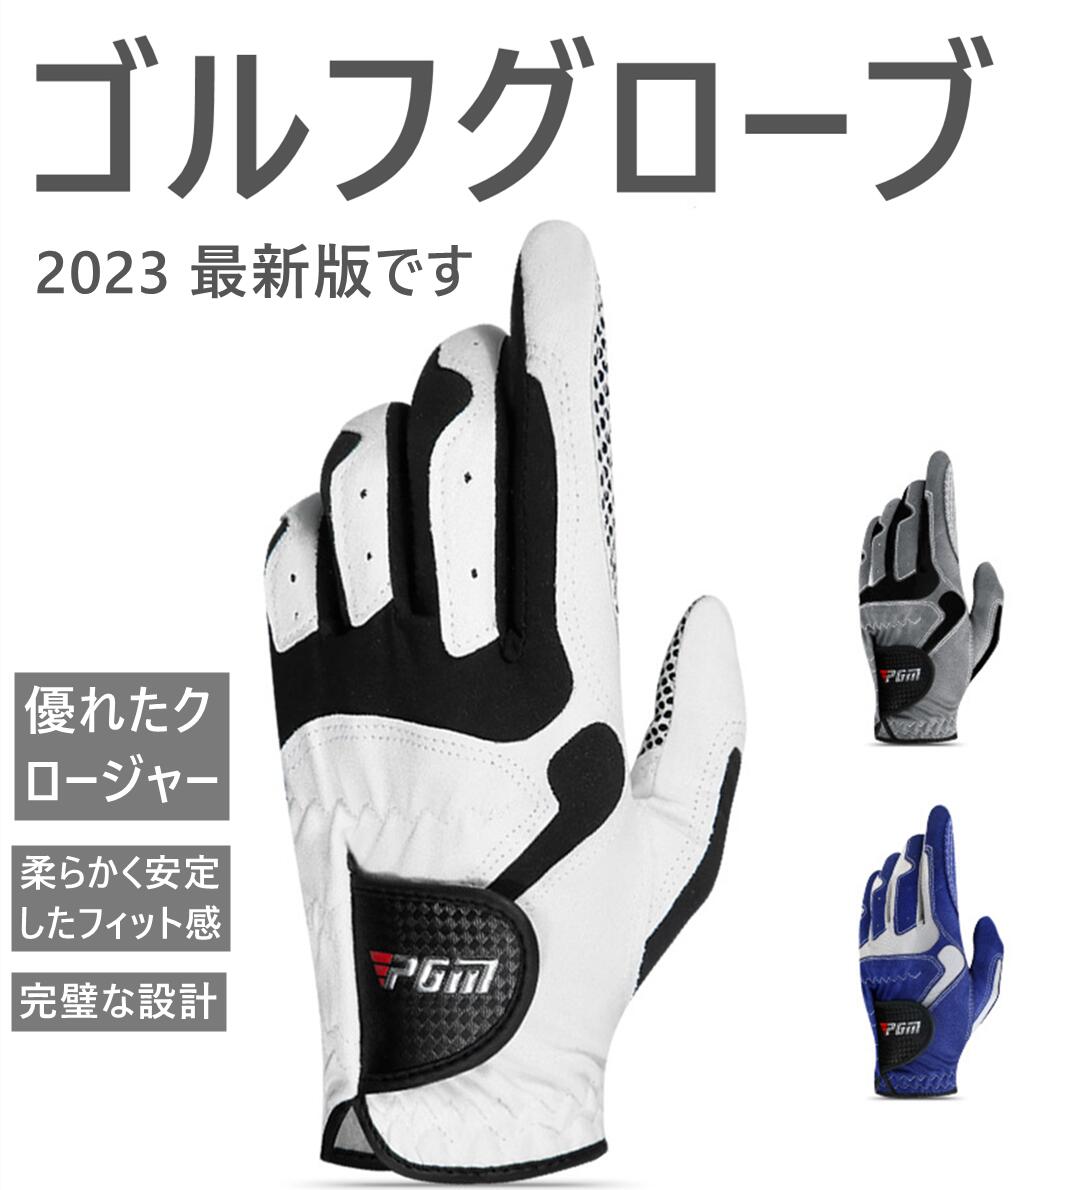 StO[u (golf glove) Y 1 p for the left hand ~ _炩 soft Stp (for golf) @ەz tBbg (fit) }WbNe[v (Velcro)